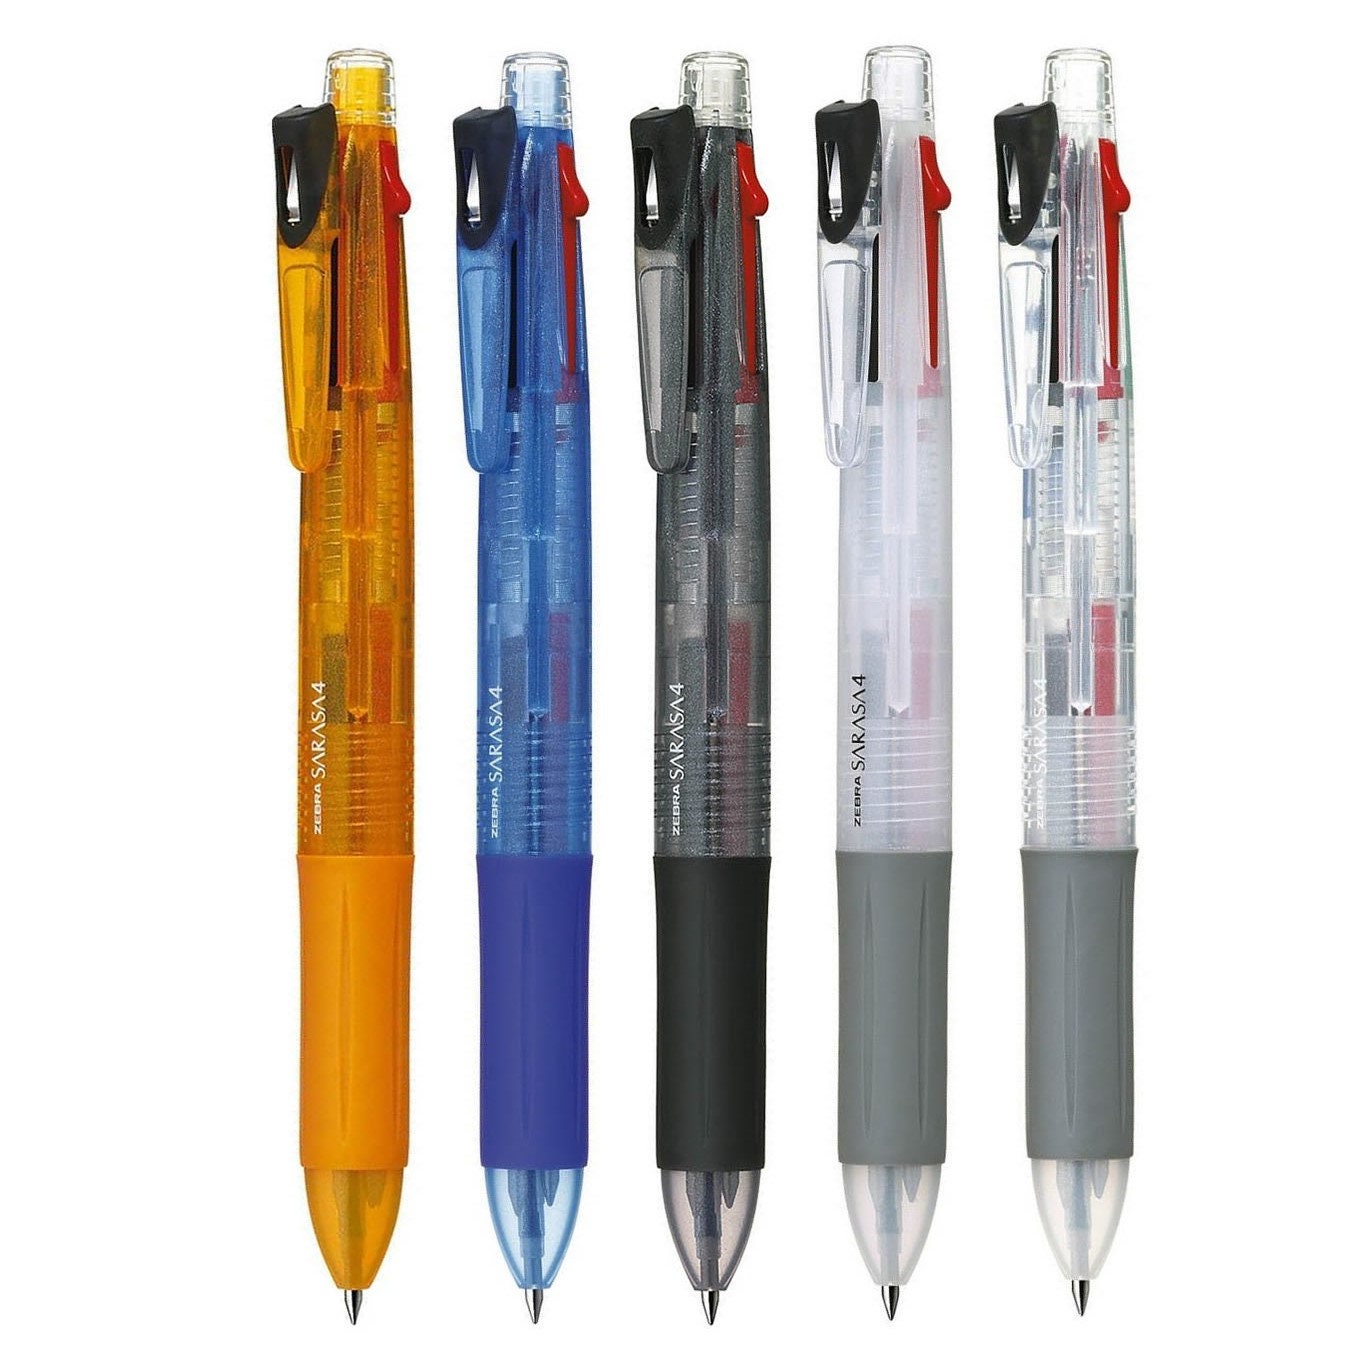 5pcs *NEW* Pentel CLIC ZE81 Assorted Colors Rectractable Eraser Pens